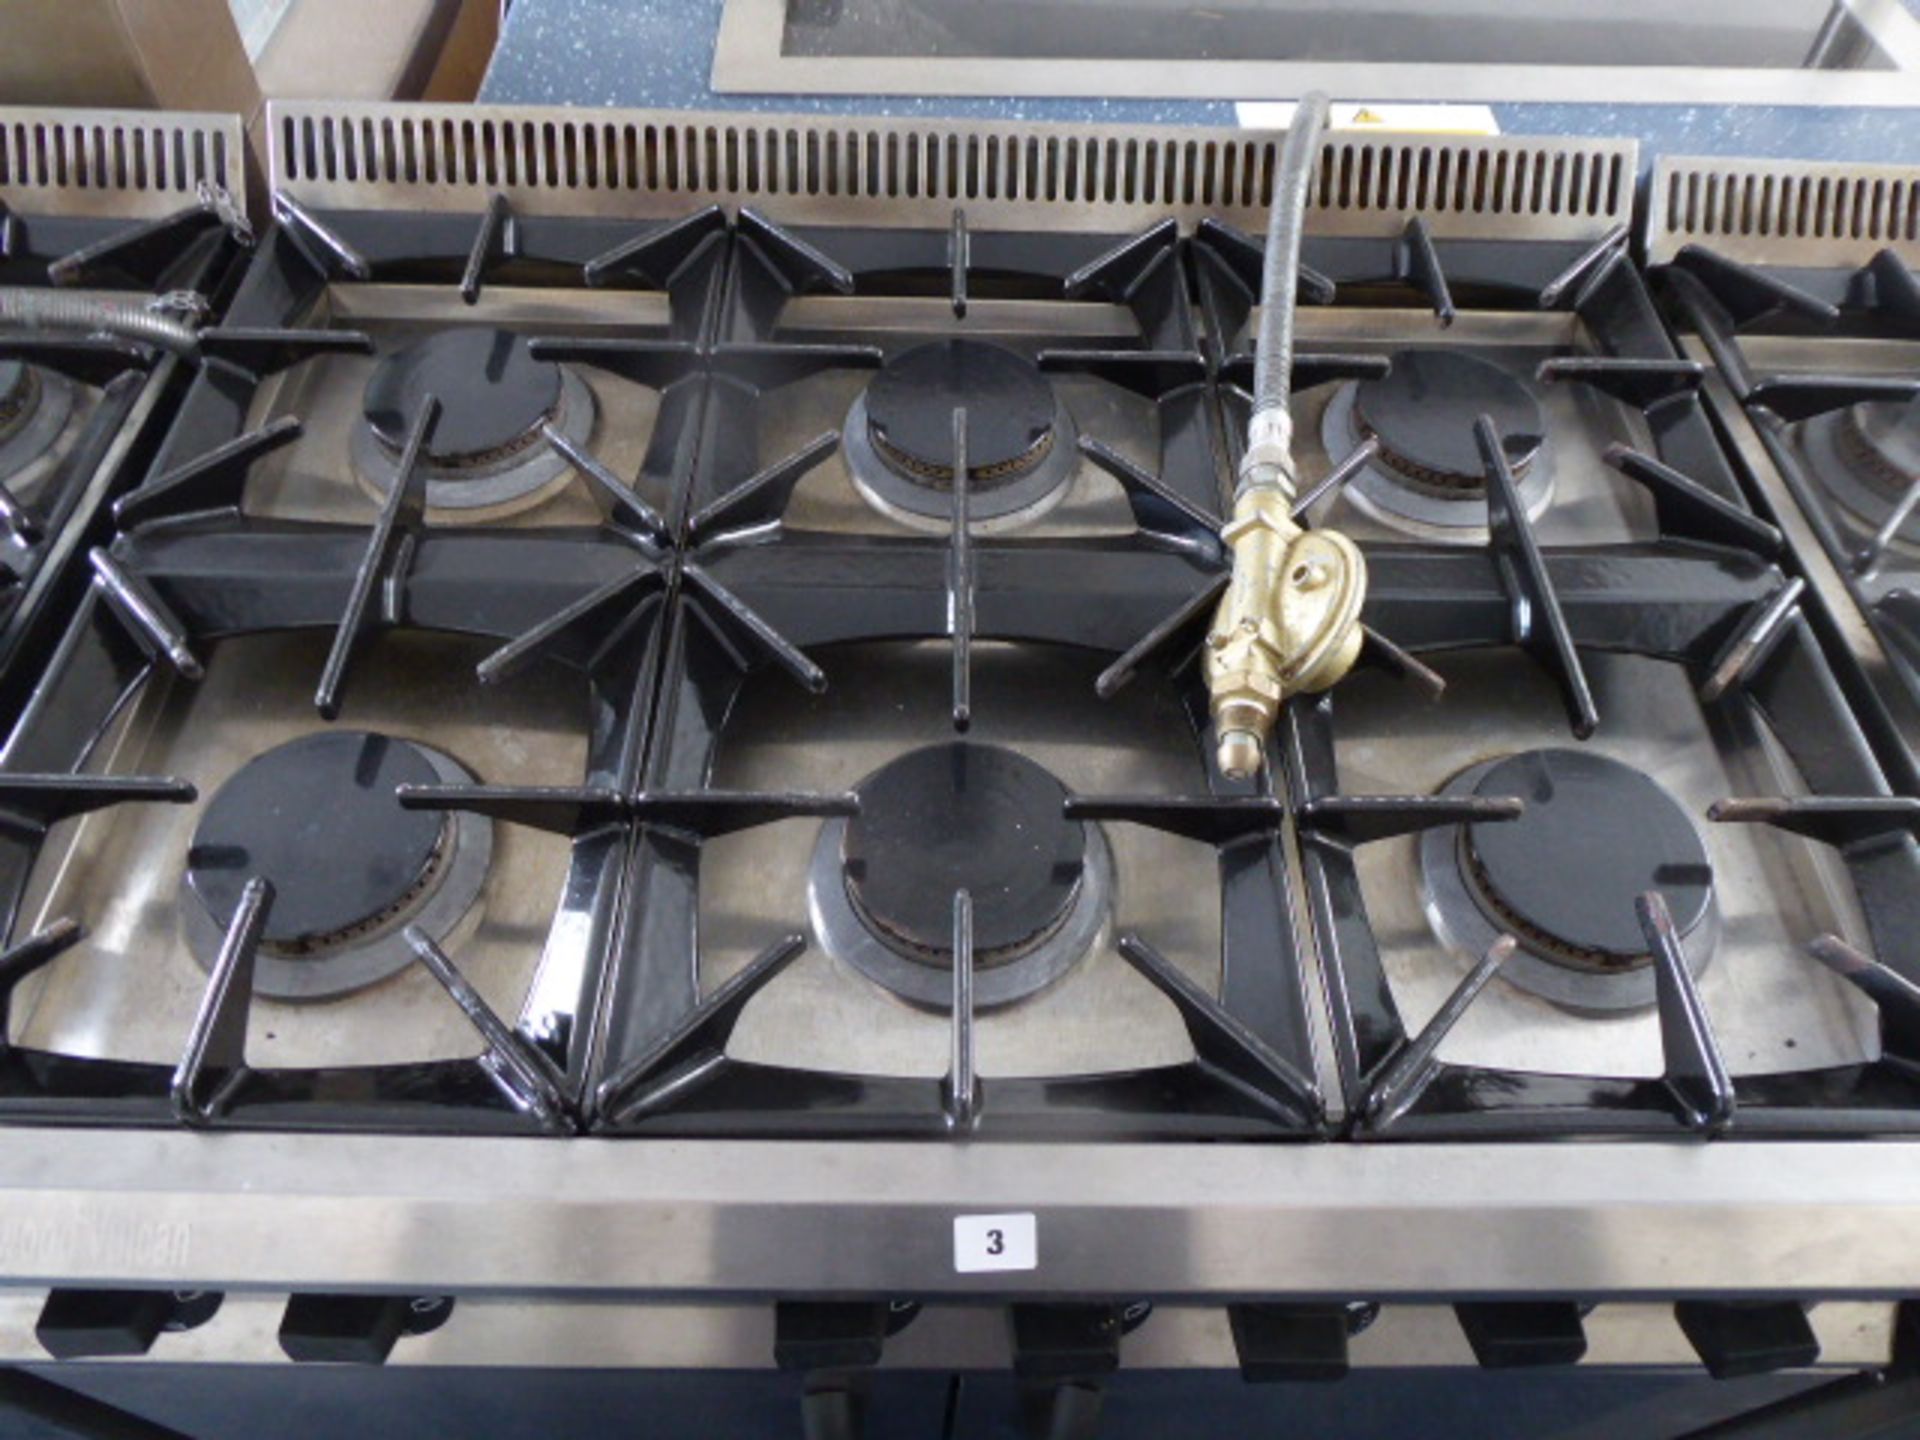 90cm LPG Moorwood Vulcan 6 burner cooker with double door oven under on castors - Image 2 of 3